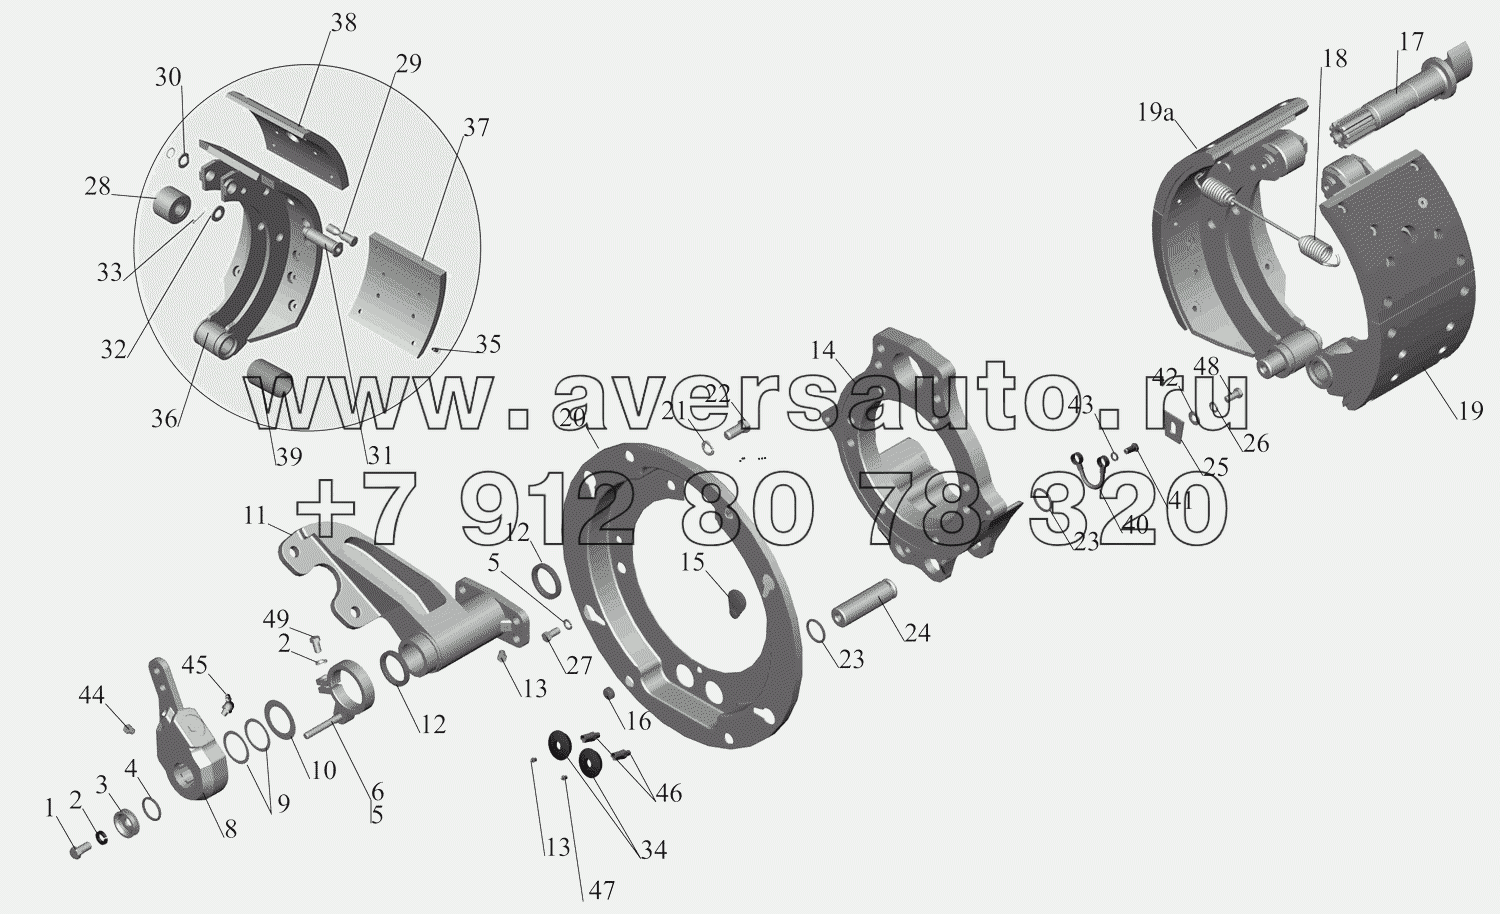 Тормозной механизм передних колес 6516-3501004 (6516-3501005)